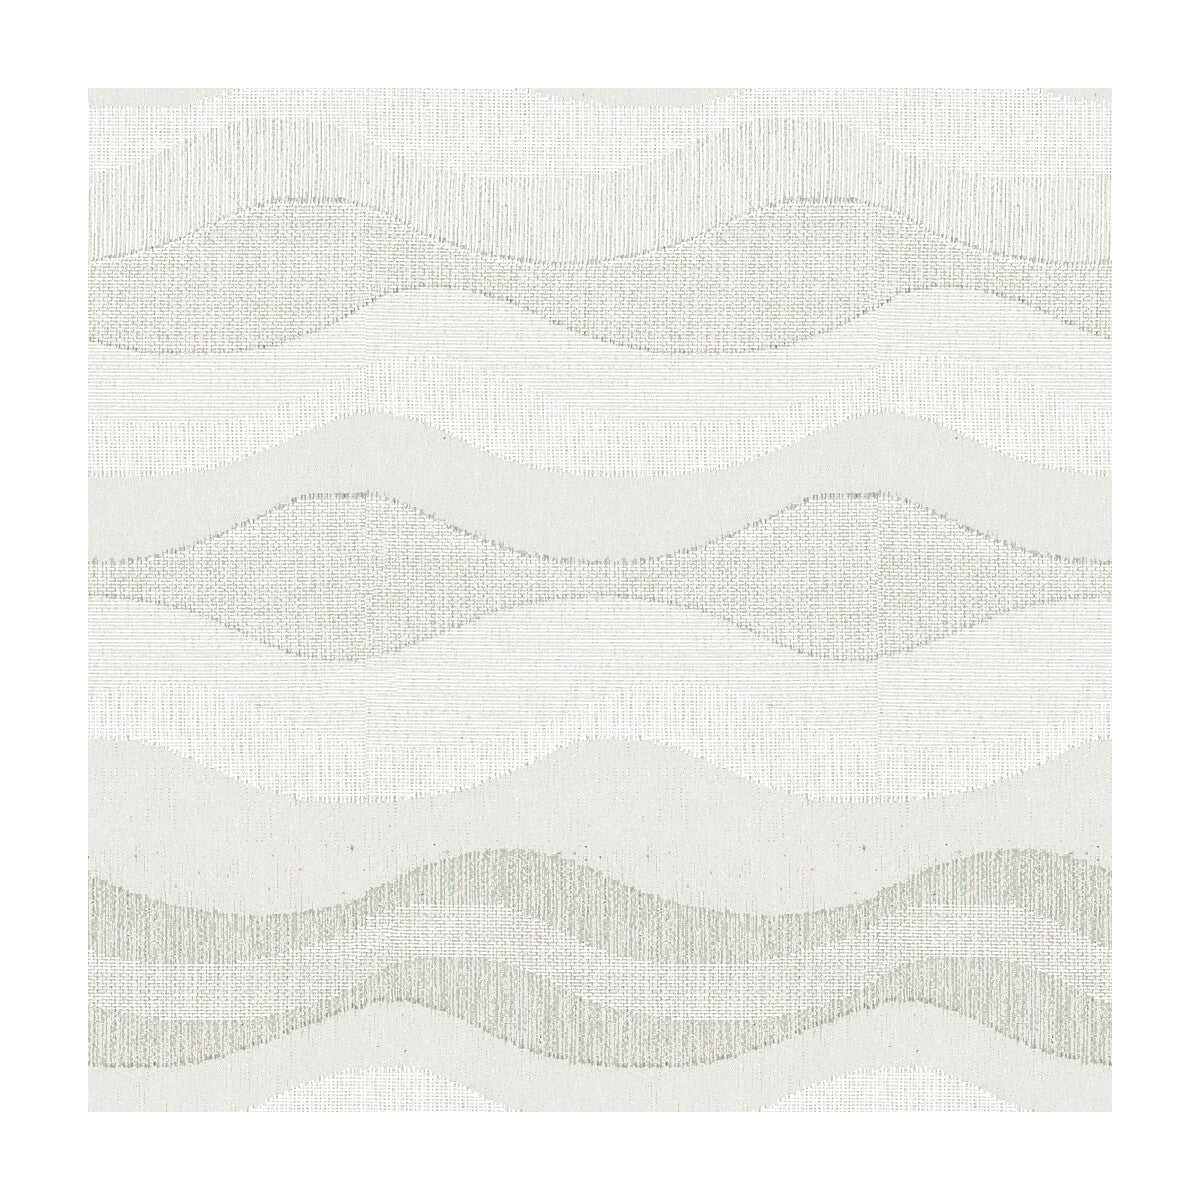 Kravet Basics fabric in 4107-101 color - pattern 4107.101.0 - by Kravet Basics